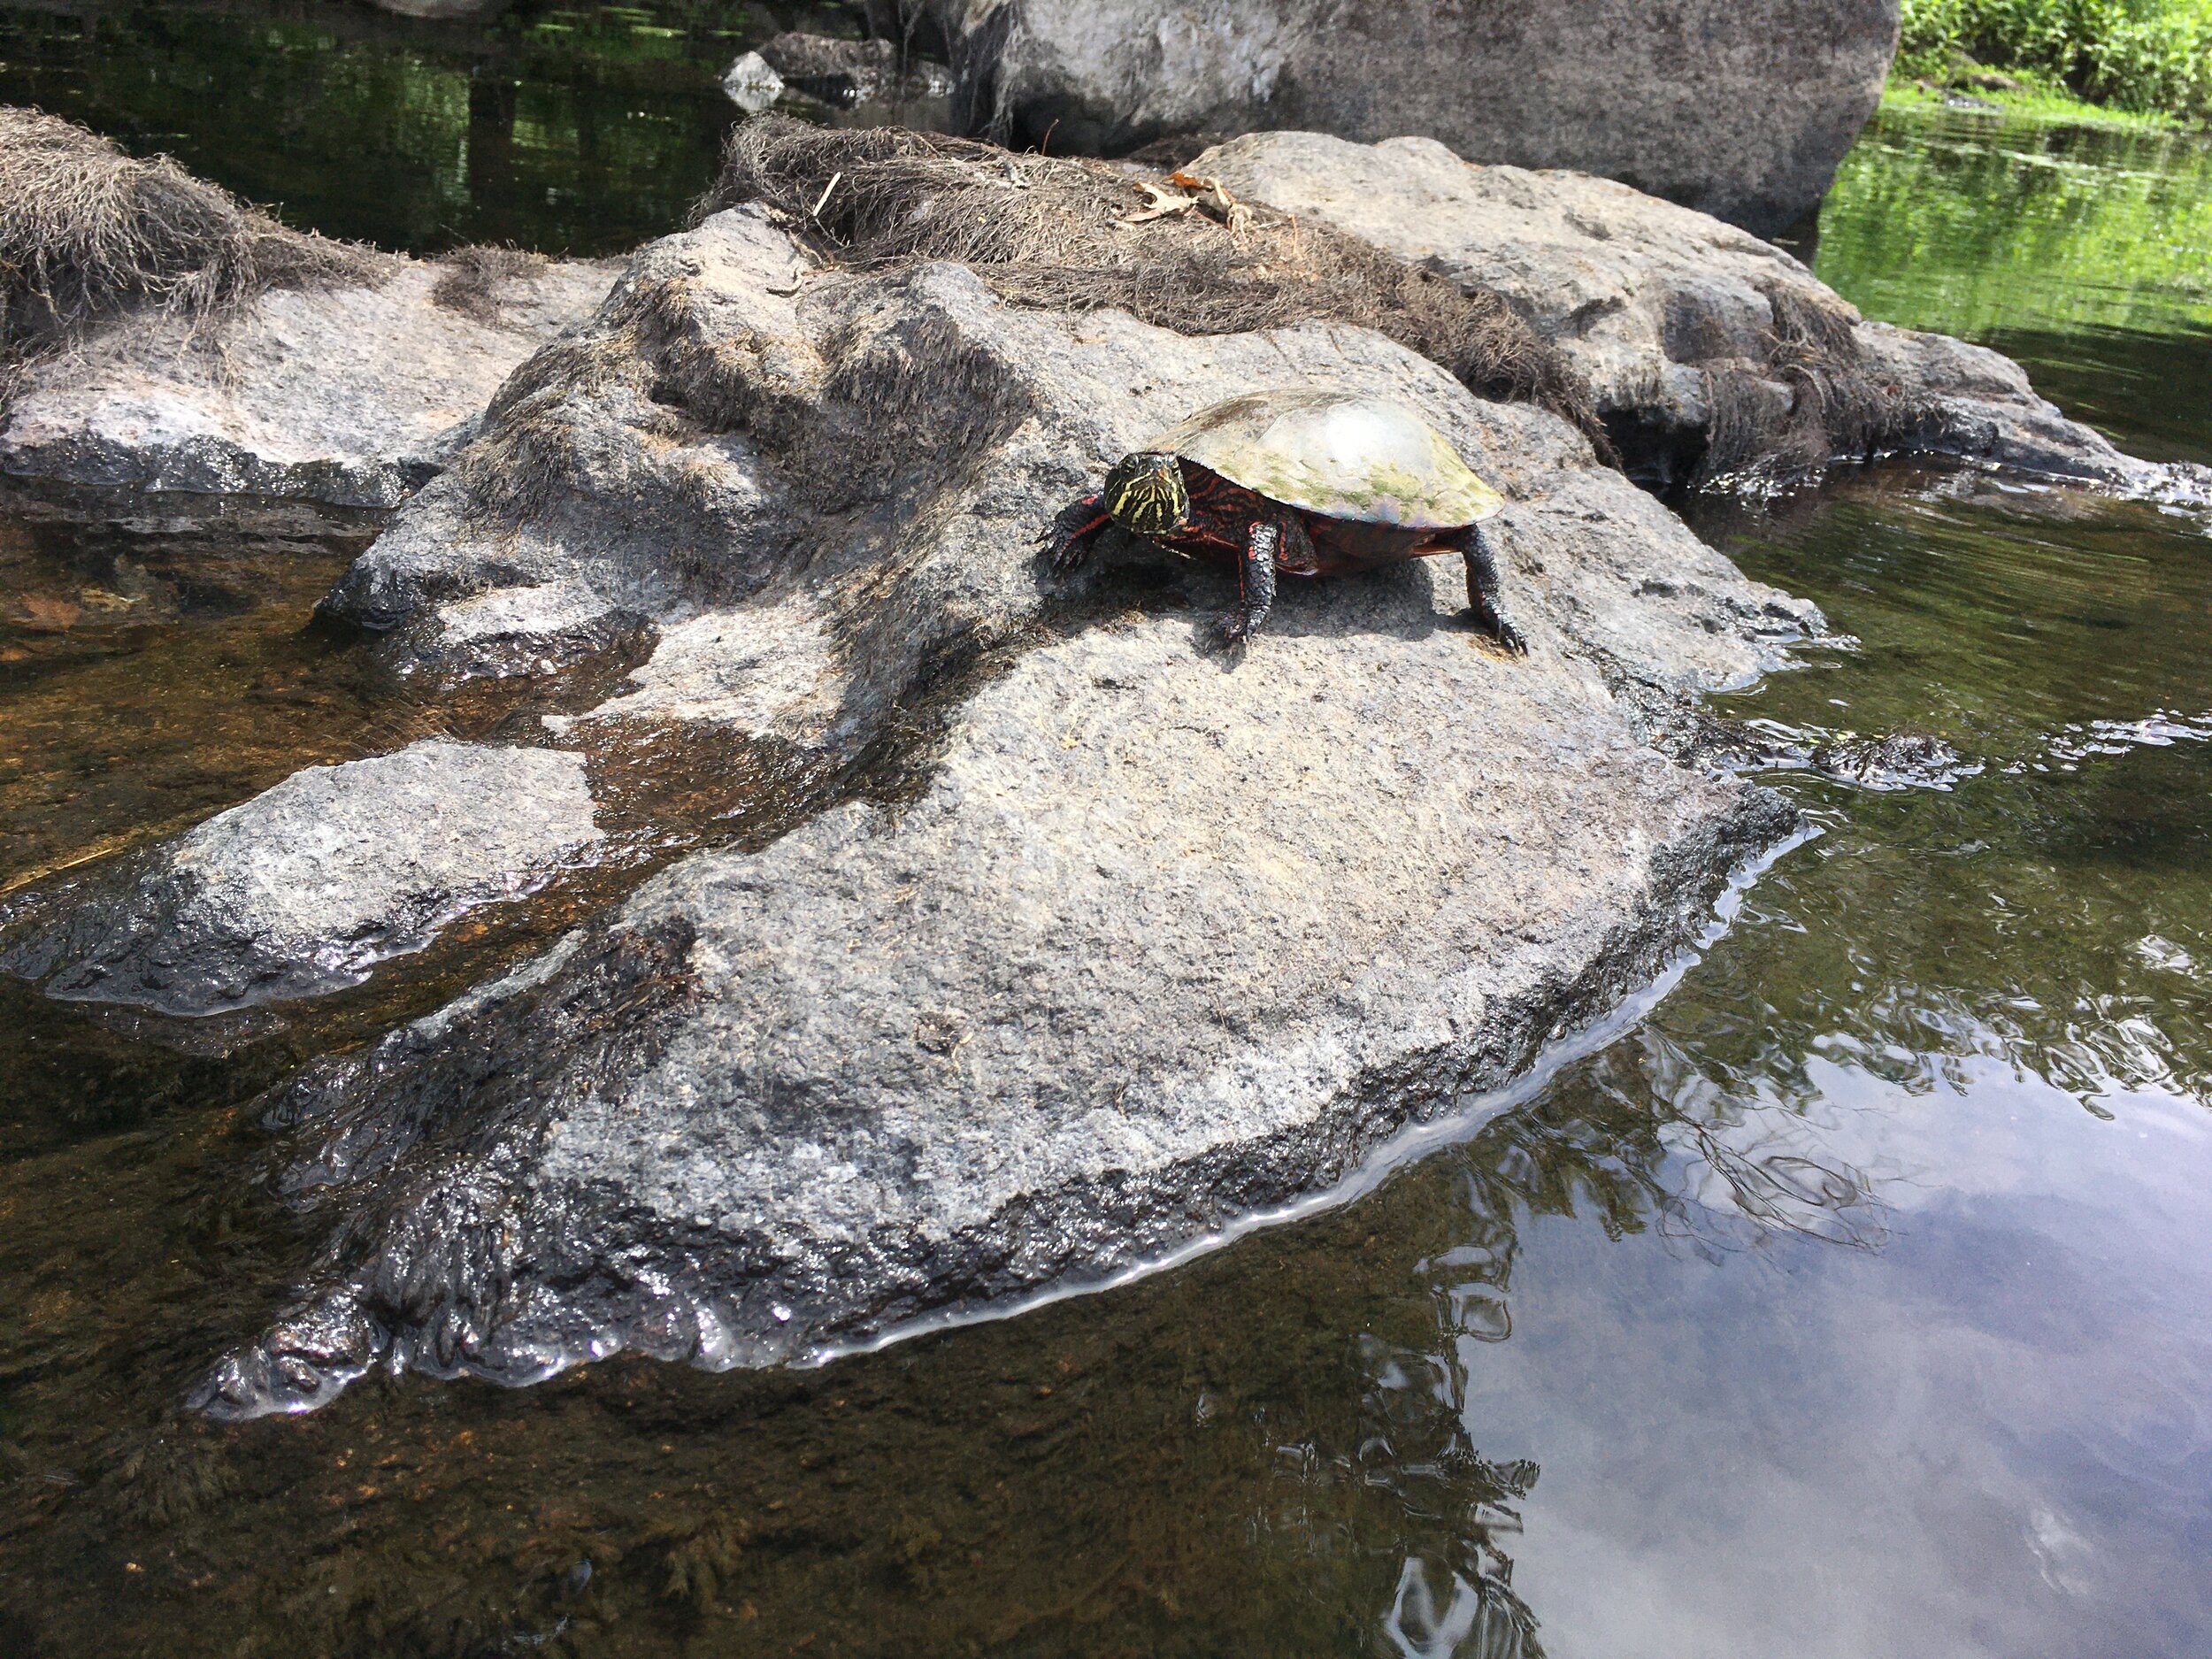 Kayaking-turtle.JPG